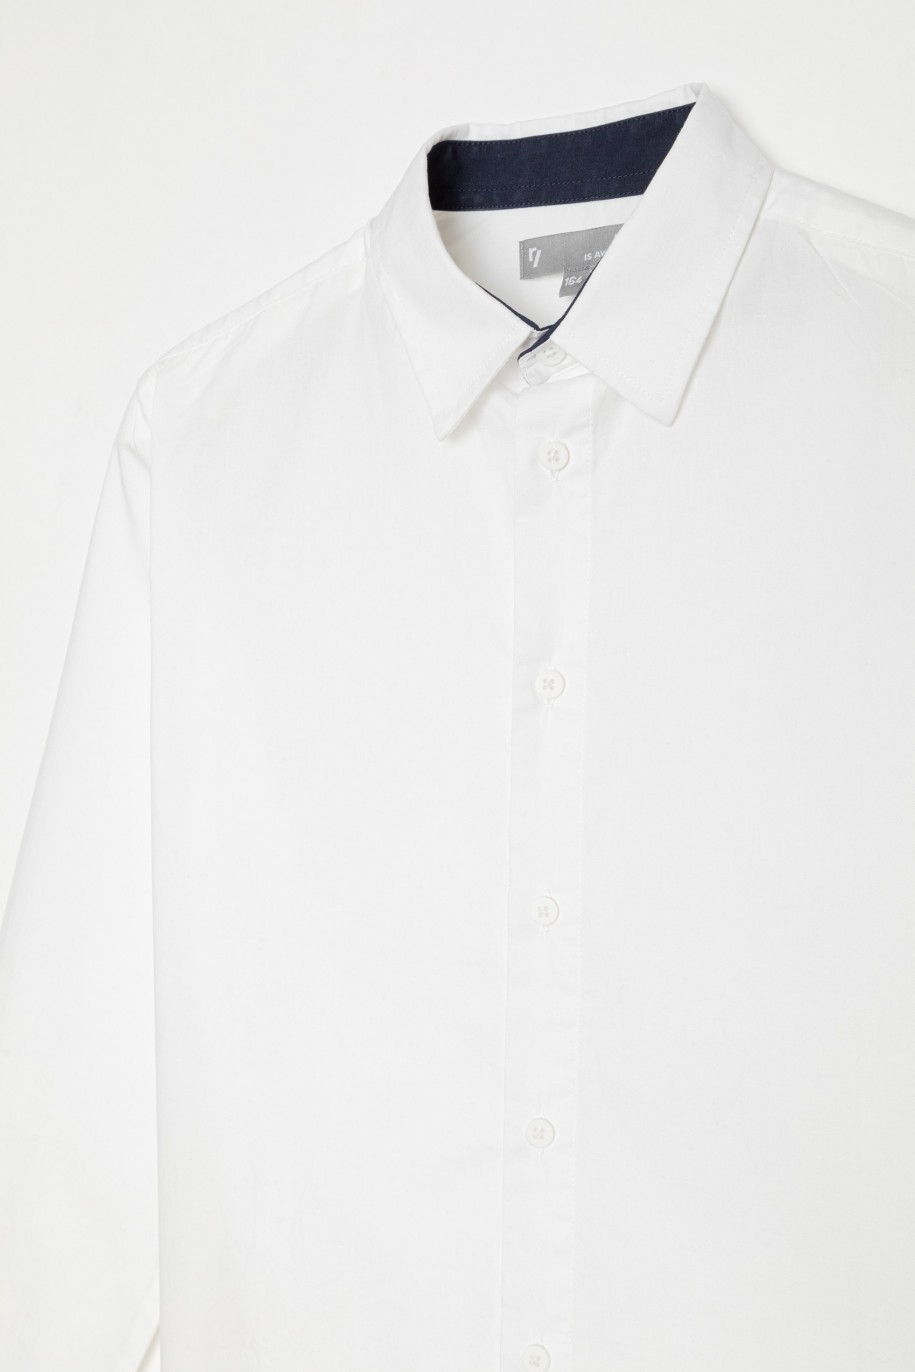 Elegancka biała koszula dla chłopaka - 22616